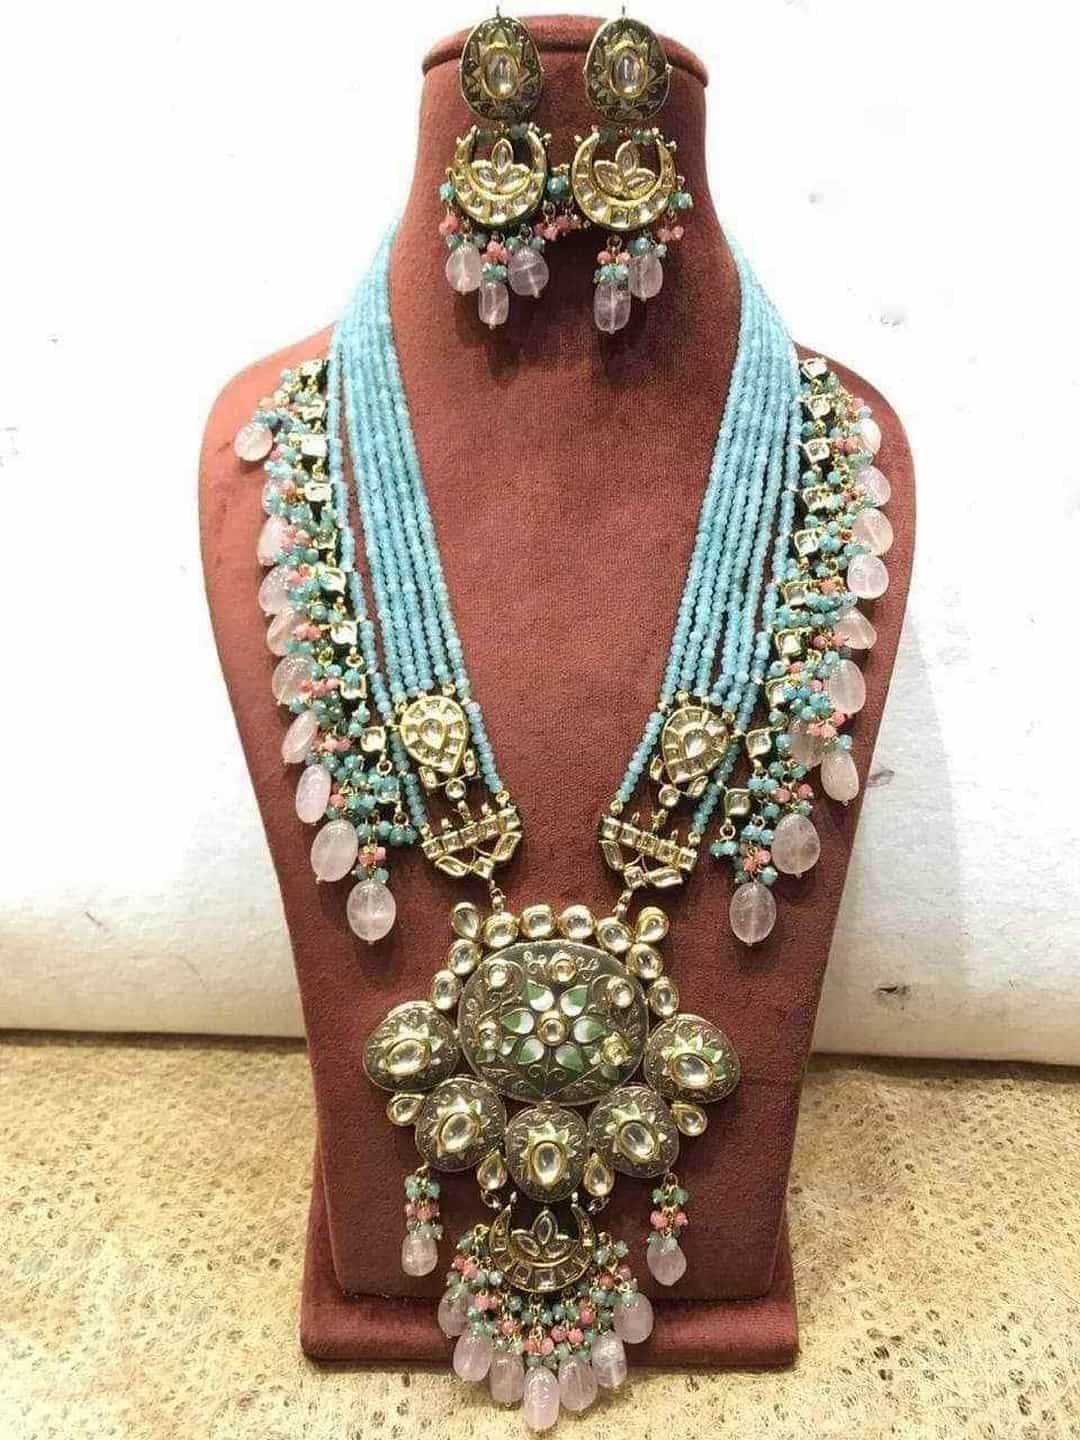 Ishhaara Light Blue Handpainted Kundan Pendant Necklace